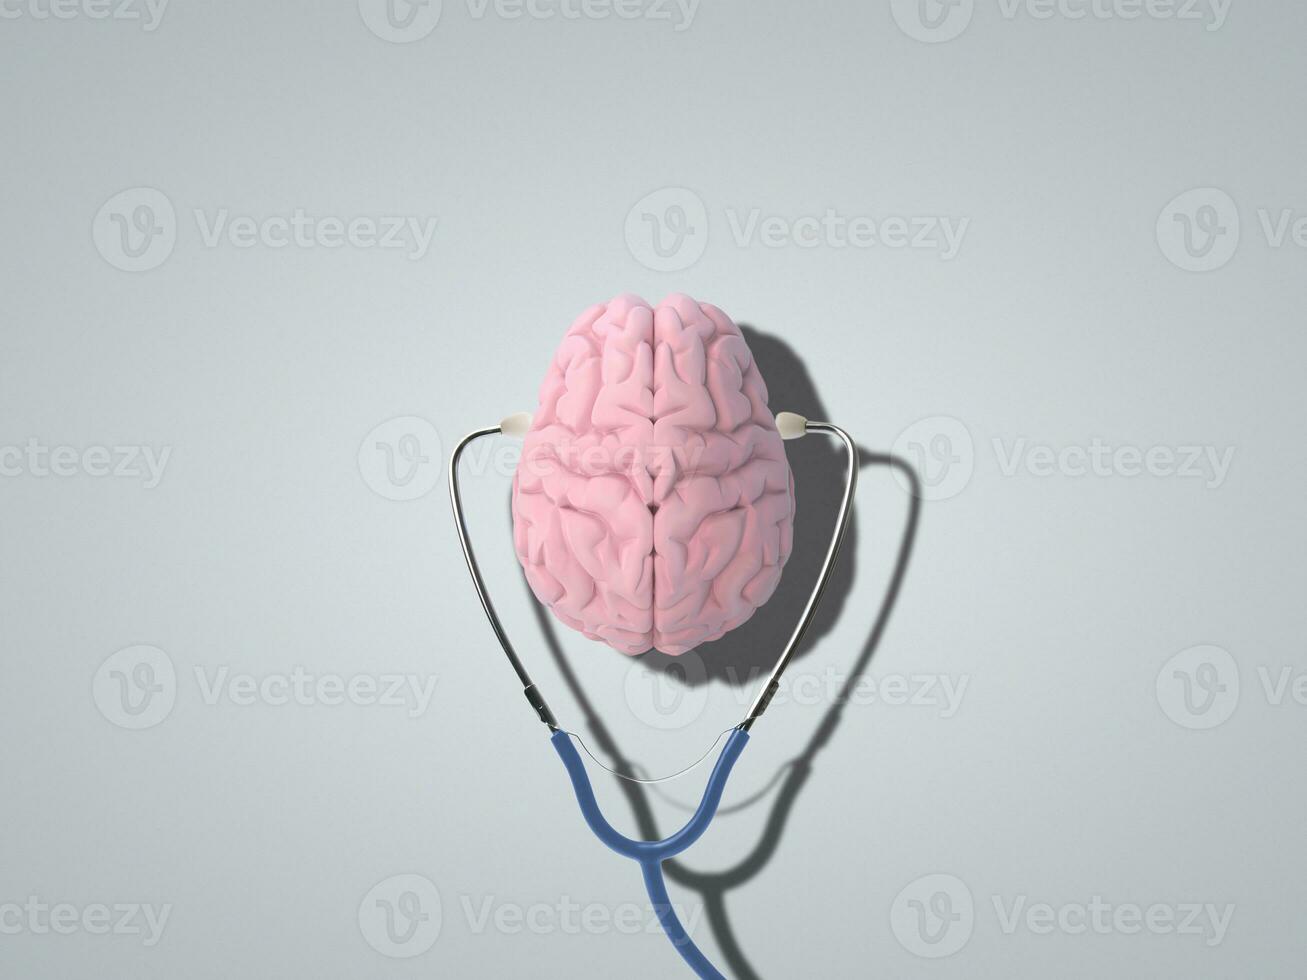 Human brain with stethoscope around photo